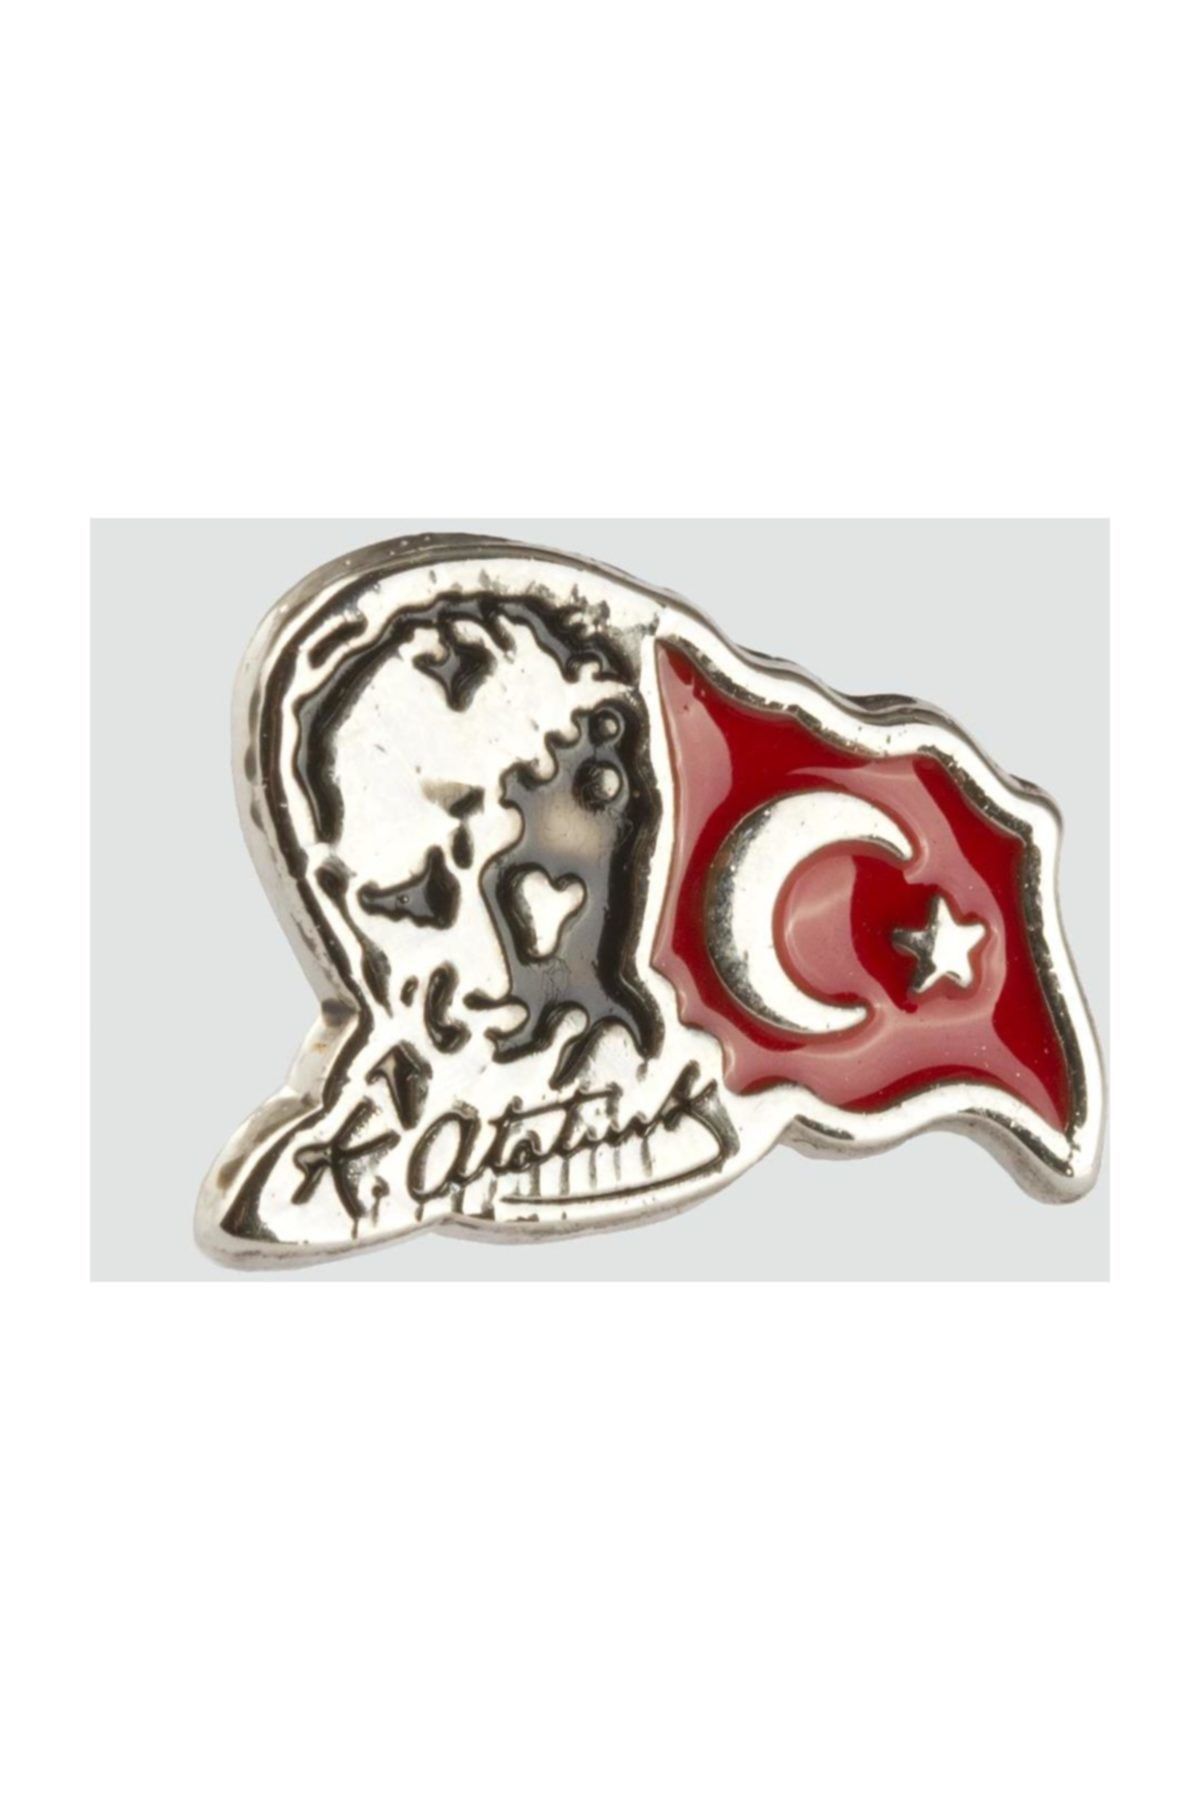 AKIN AKSESUAR HEDİYELİK Ay Yıldız Tük Bayrağı Atatürk Resimli Gümüş Rengi Yaka Rozeti